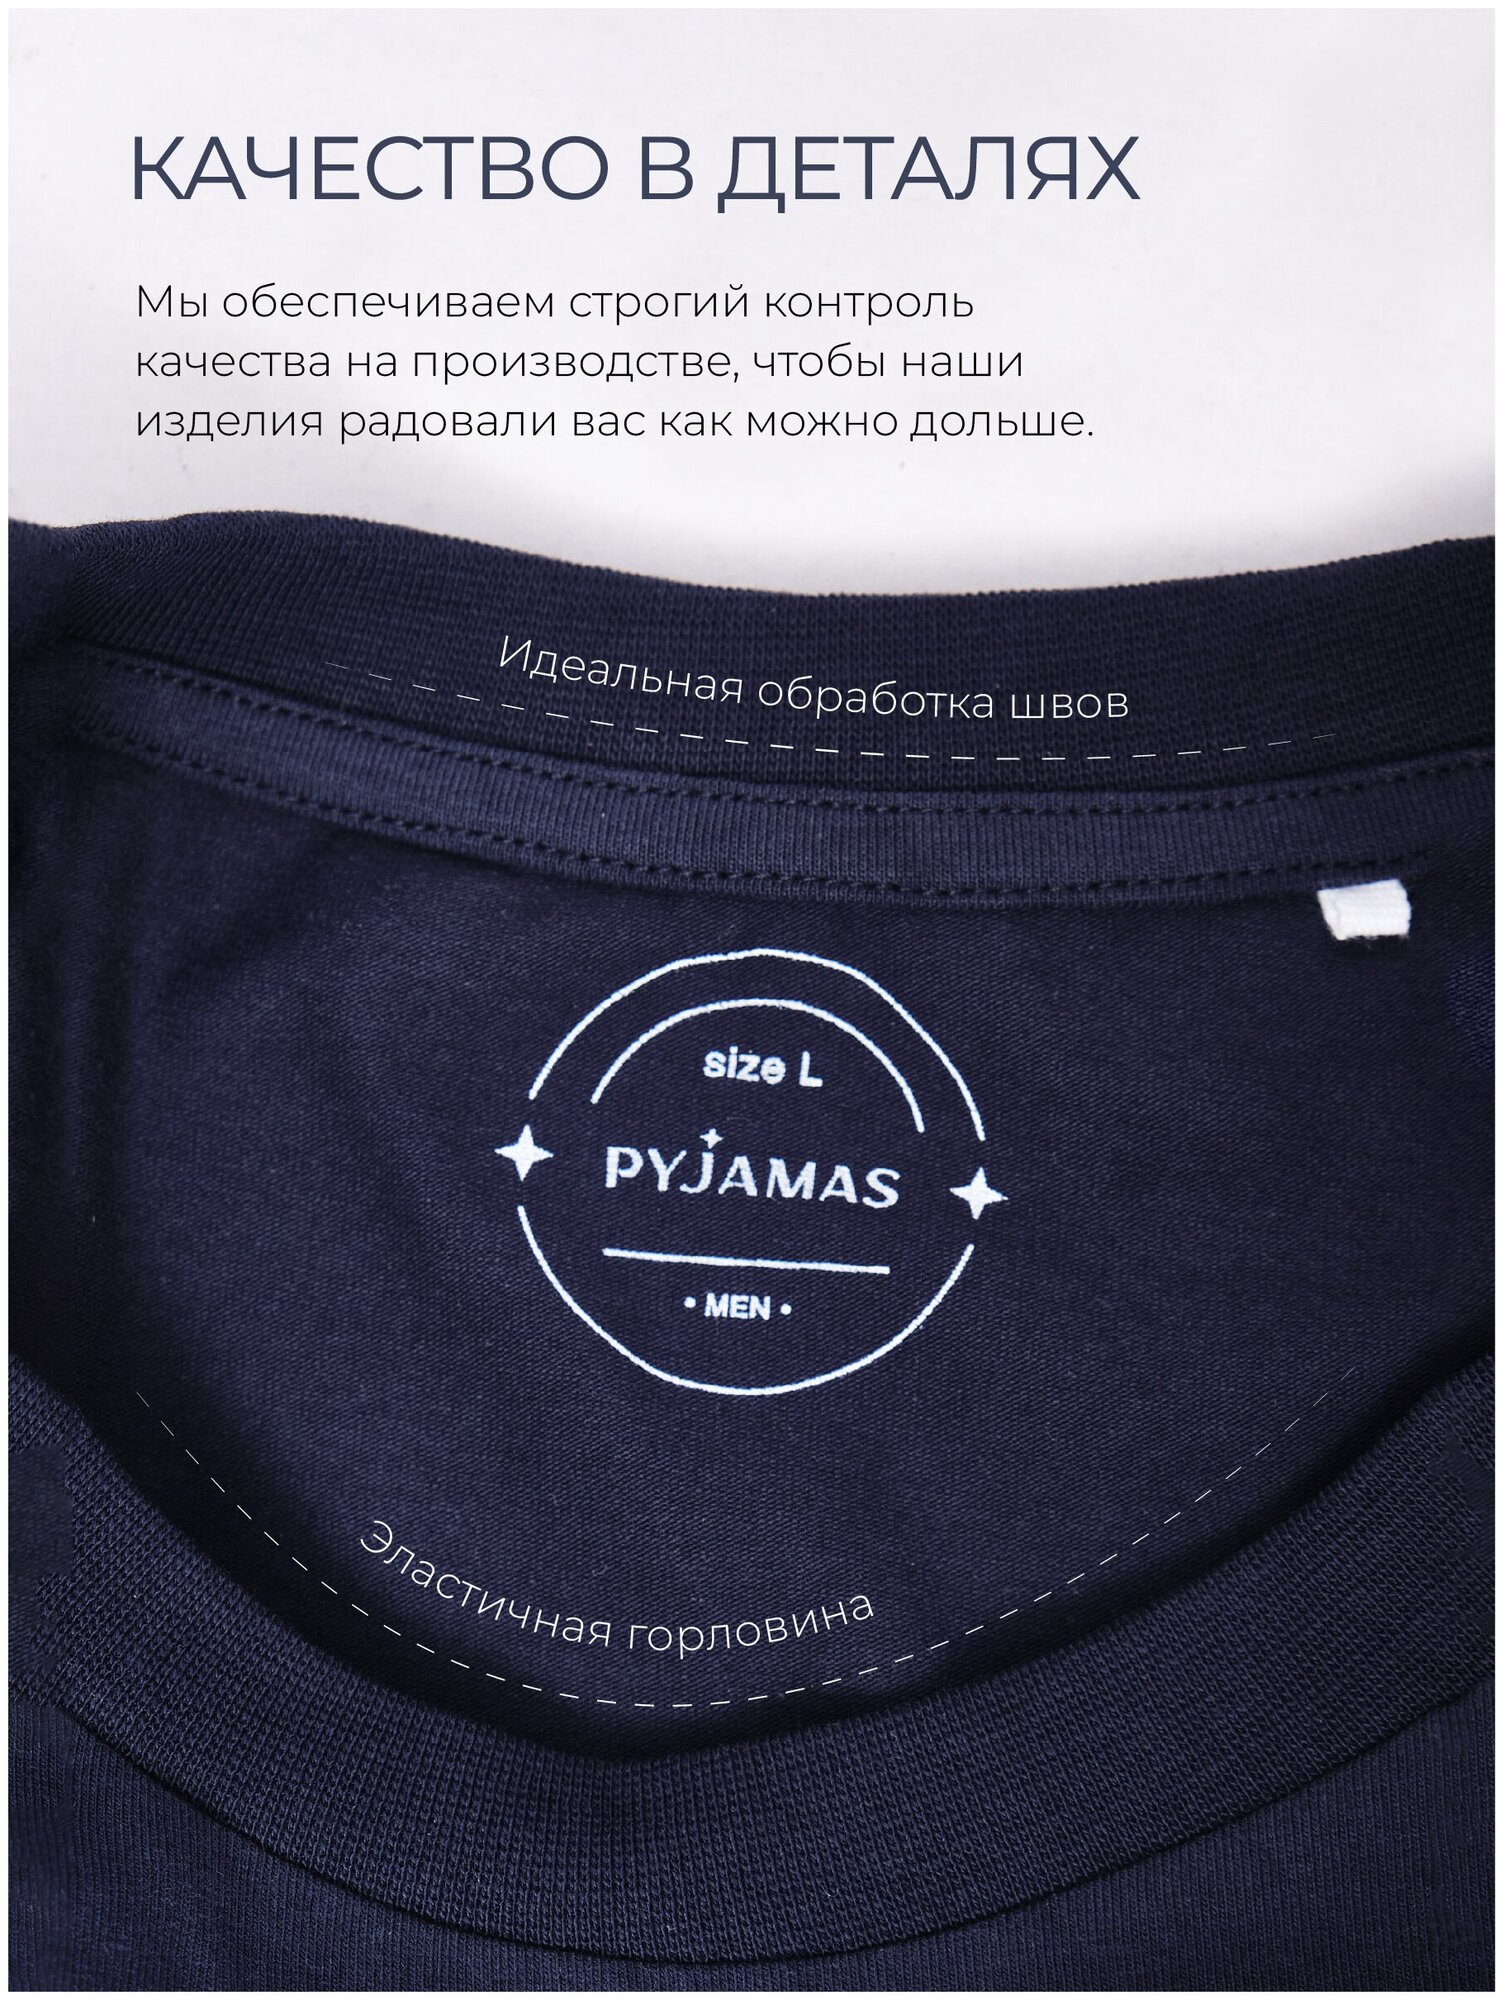 Пижама мужская, PYJAMAS, размер XL, синий, клетка - фотография № 7